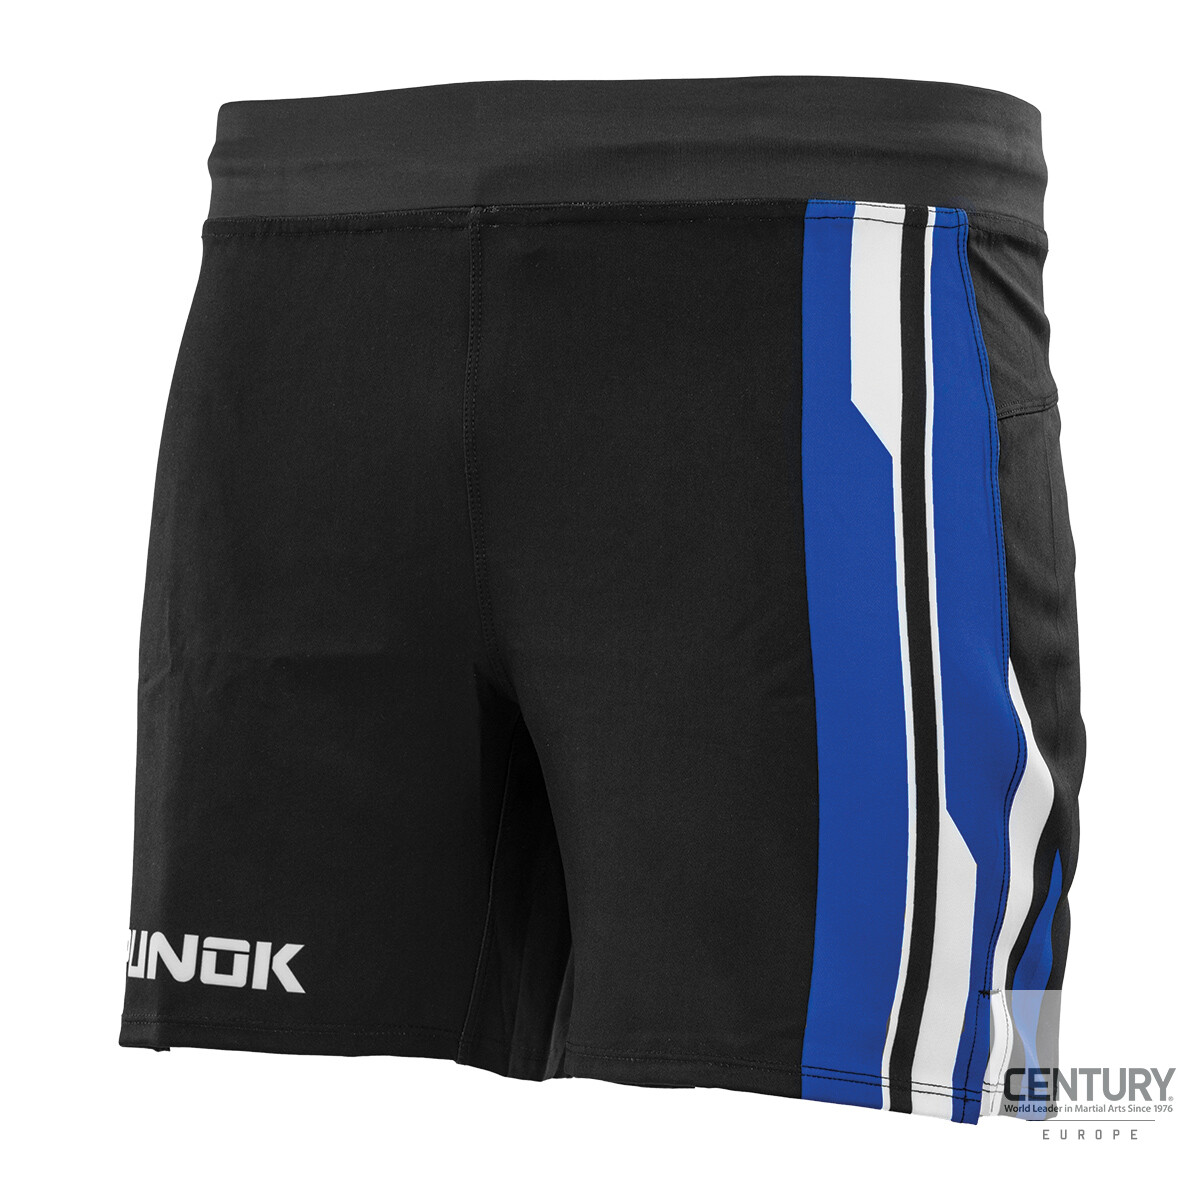 PUNOK Unisex Fight Shorts